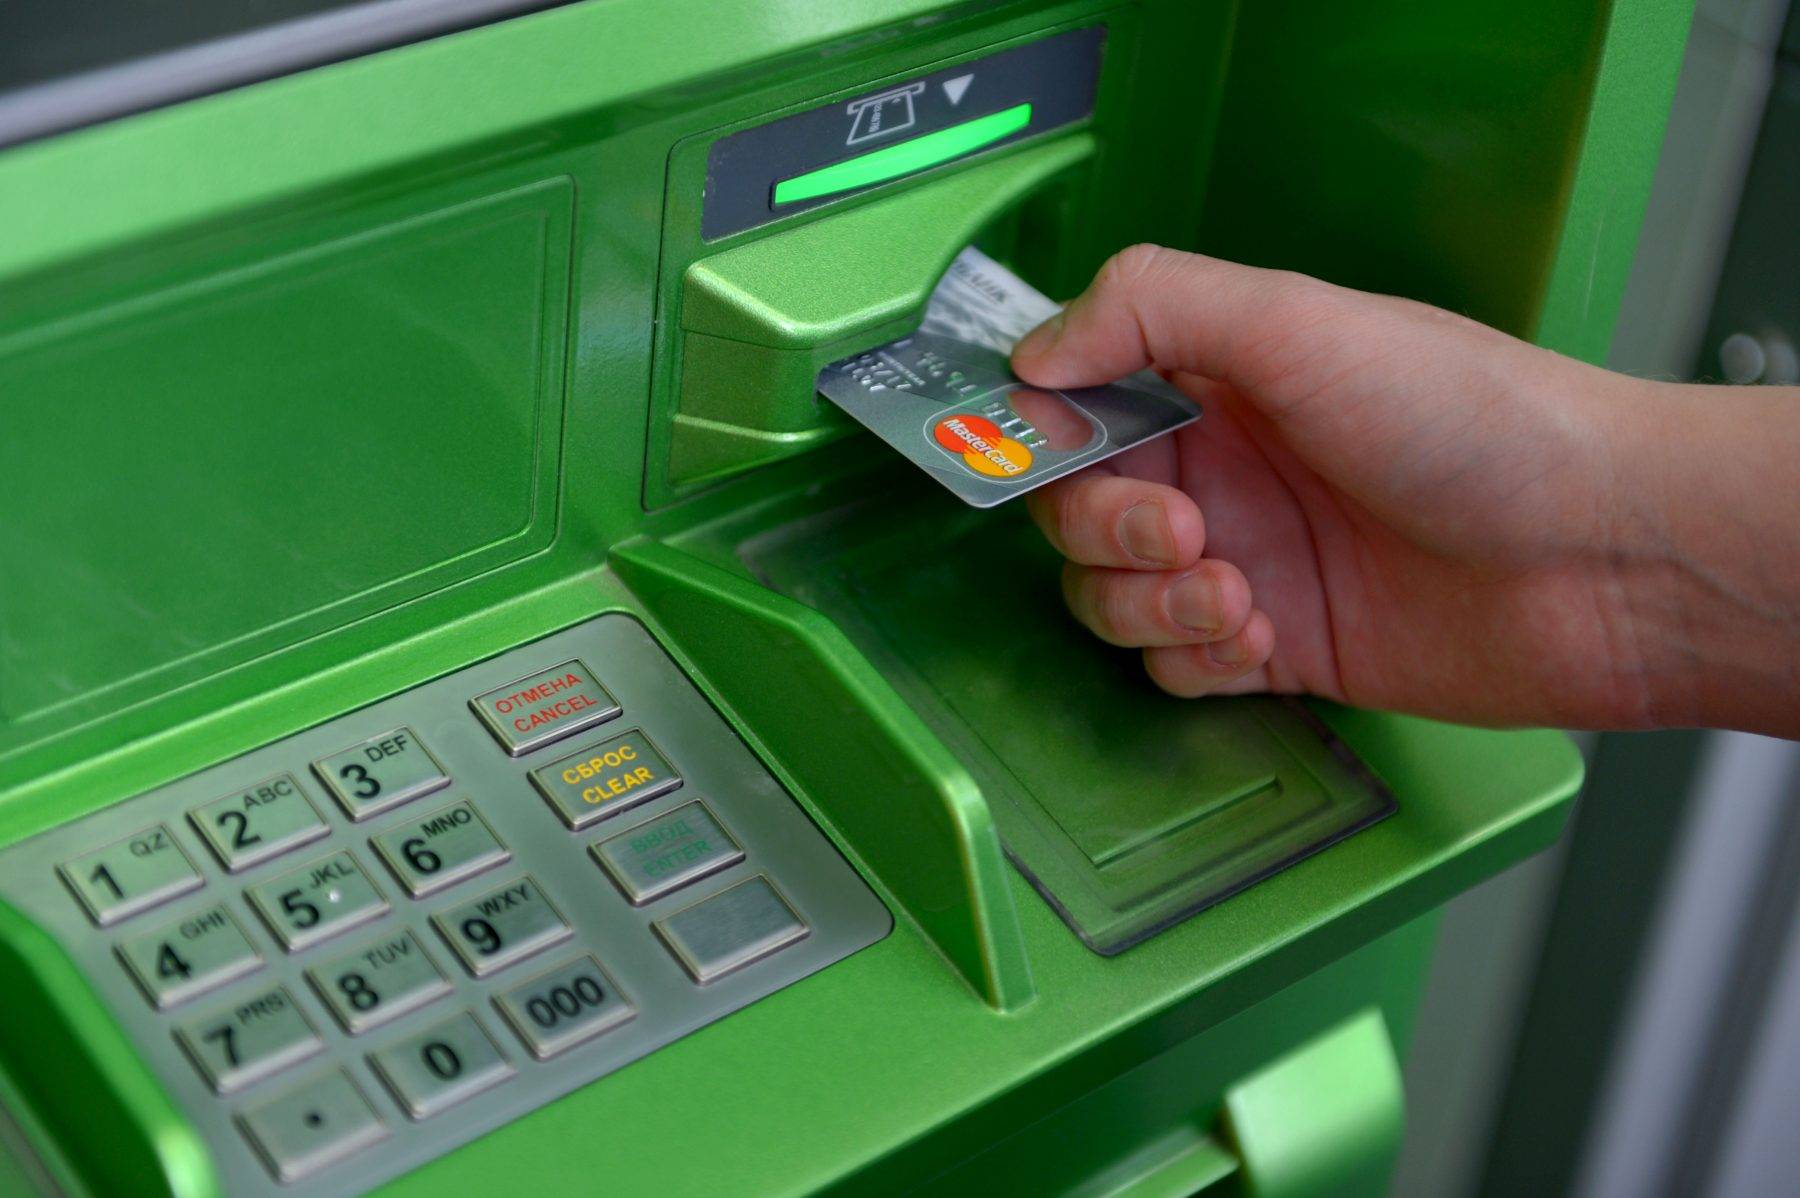 Эксперты рассказали о технических и социальных способах похищения денег из банкоматов